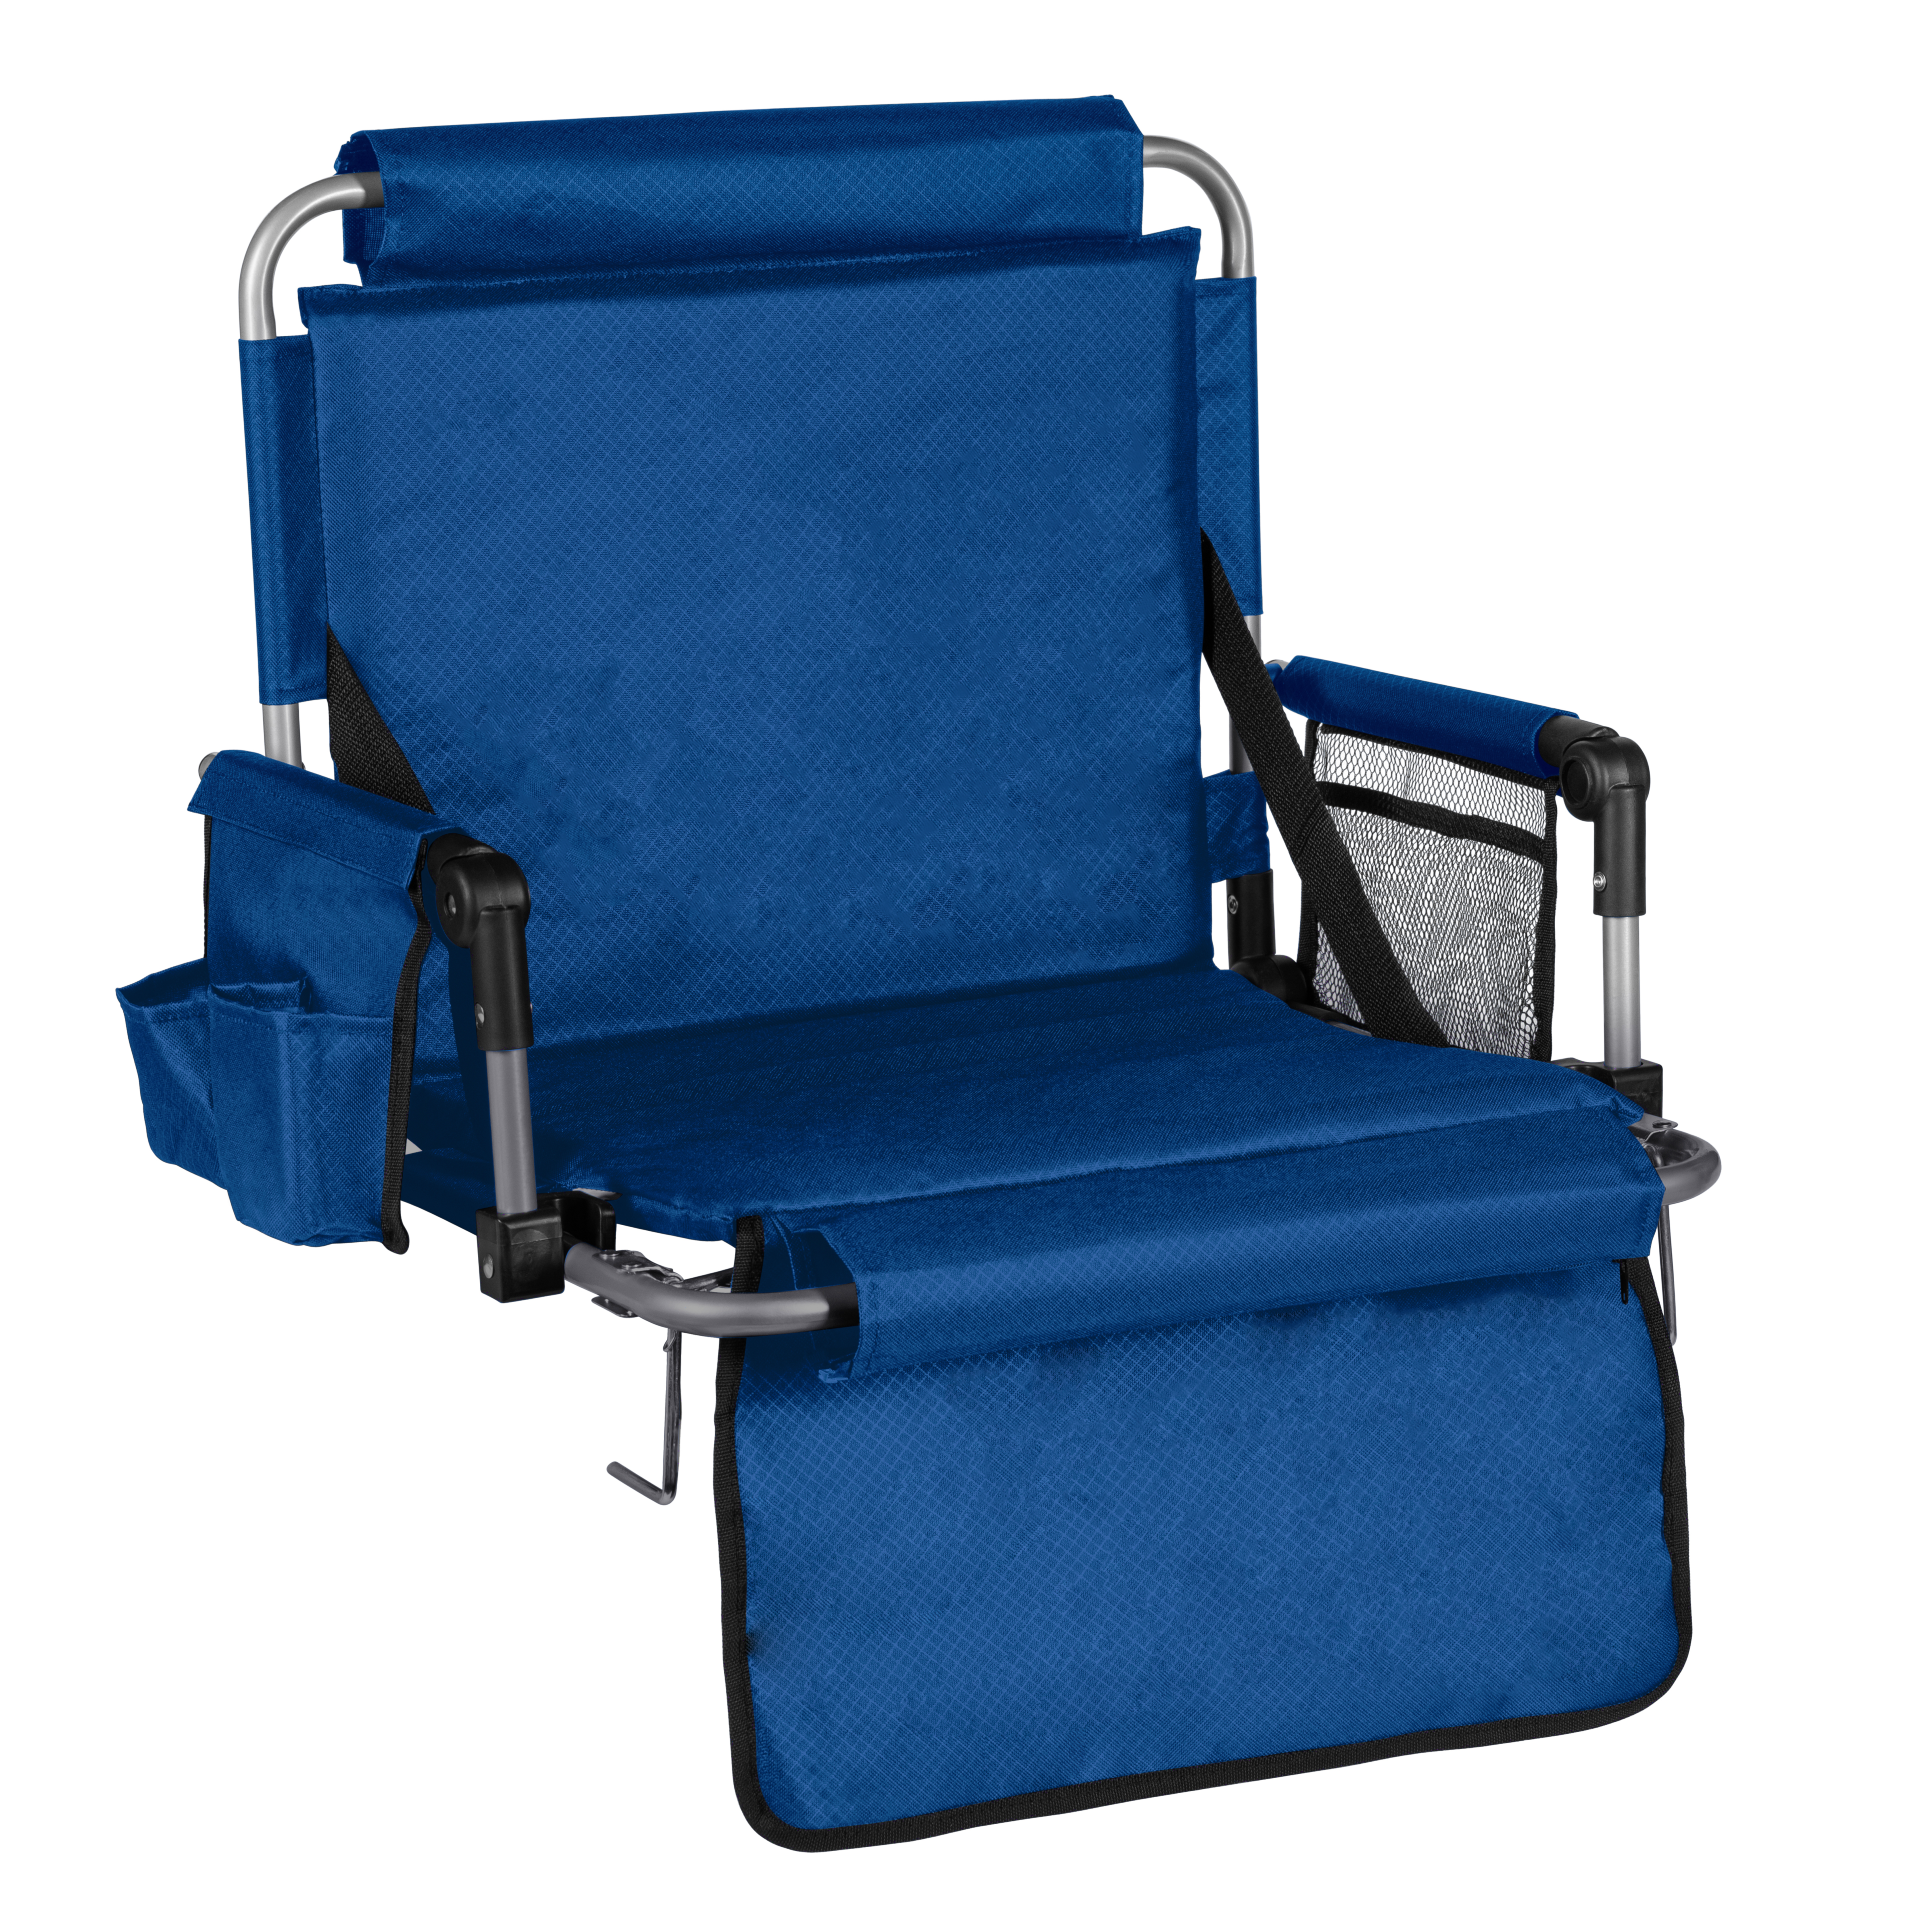 Alpcour Foldable Stadium Seat – Alpcour